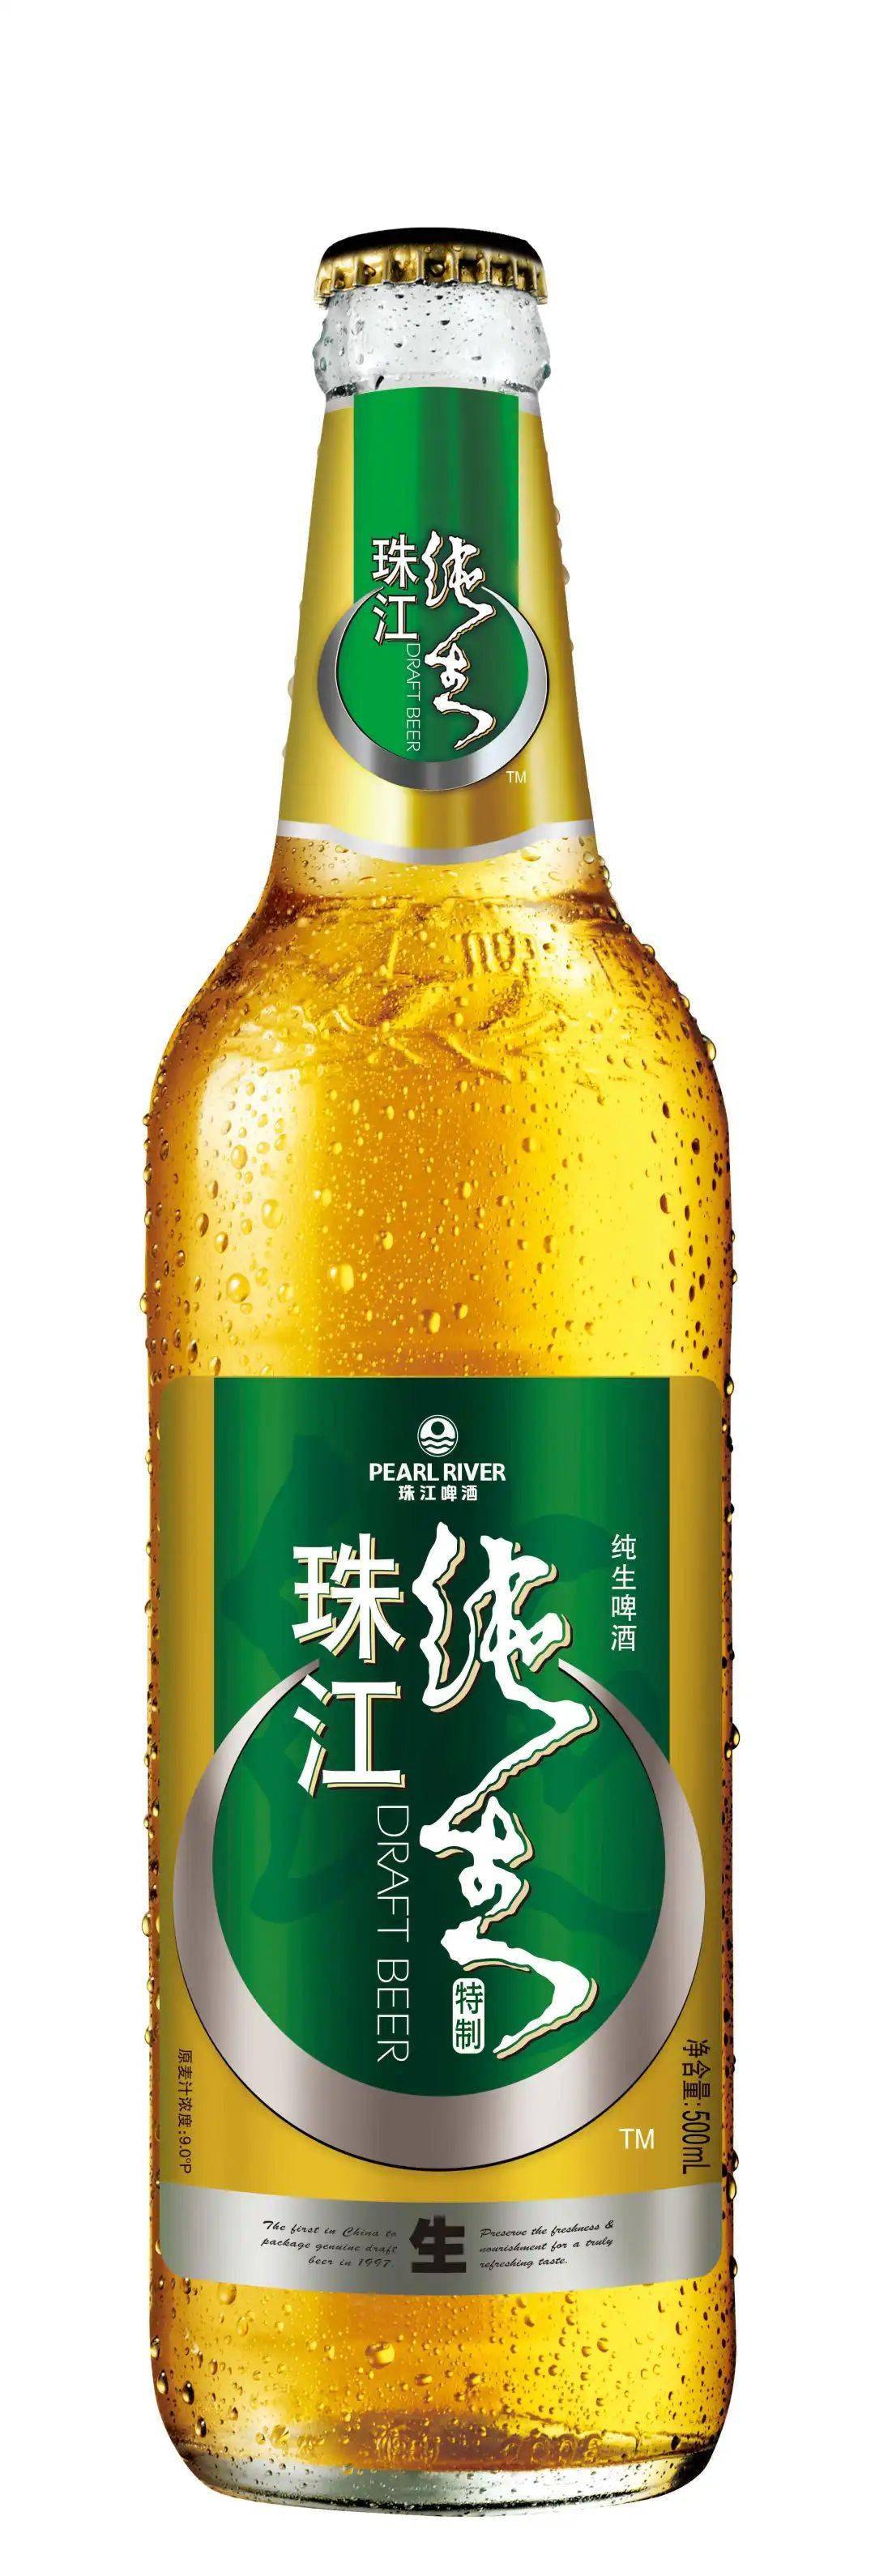 珠江啤酒系列产品